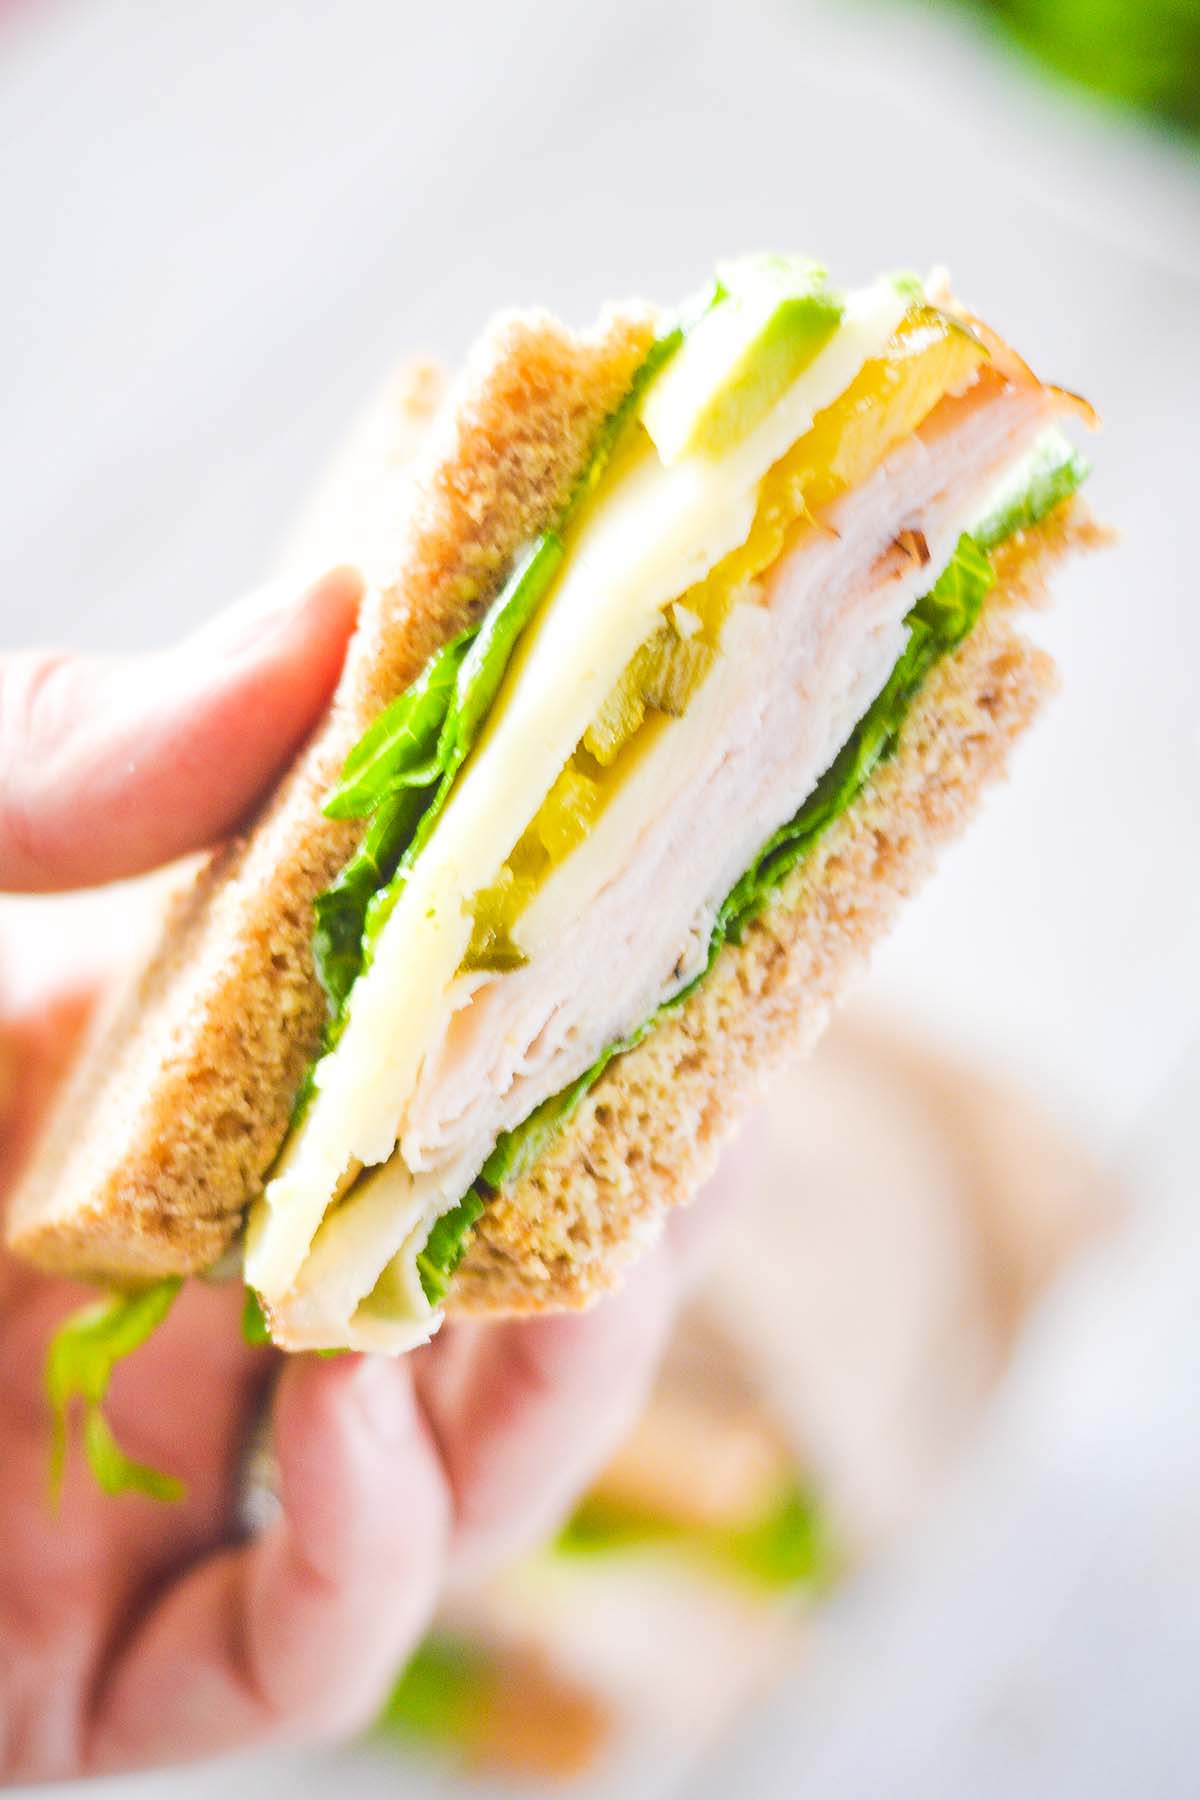 Turkey Avocado Sandwich